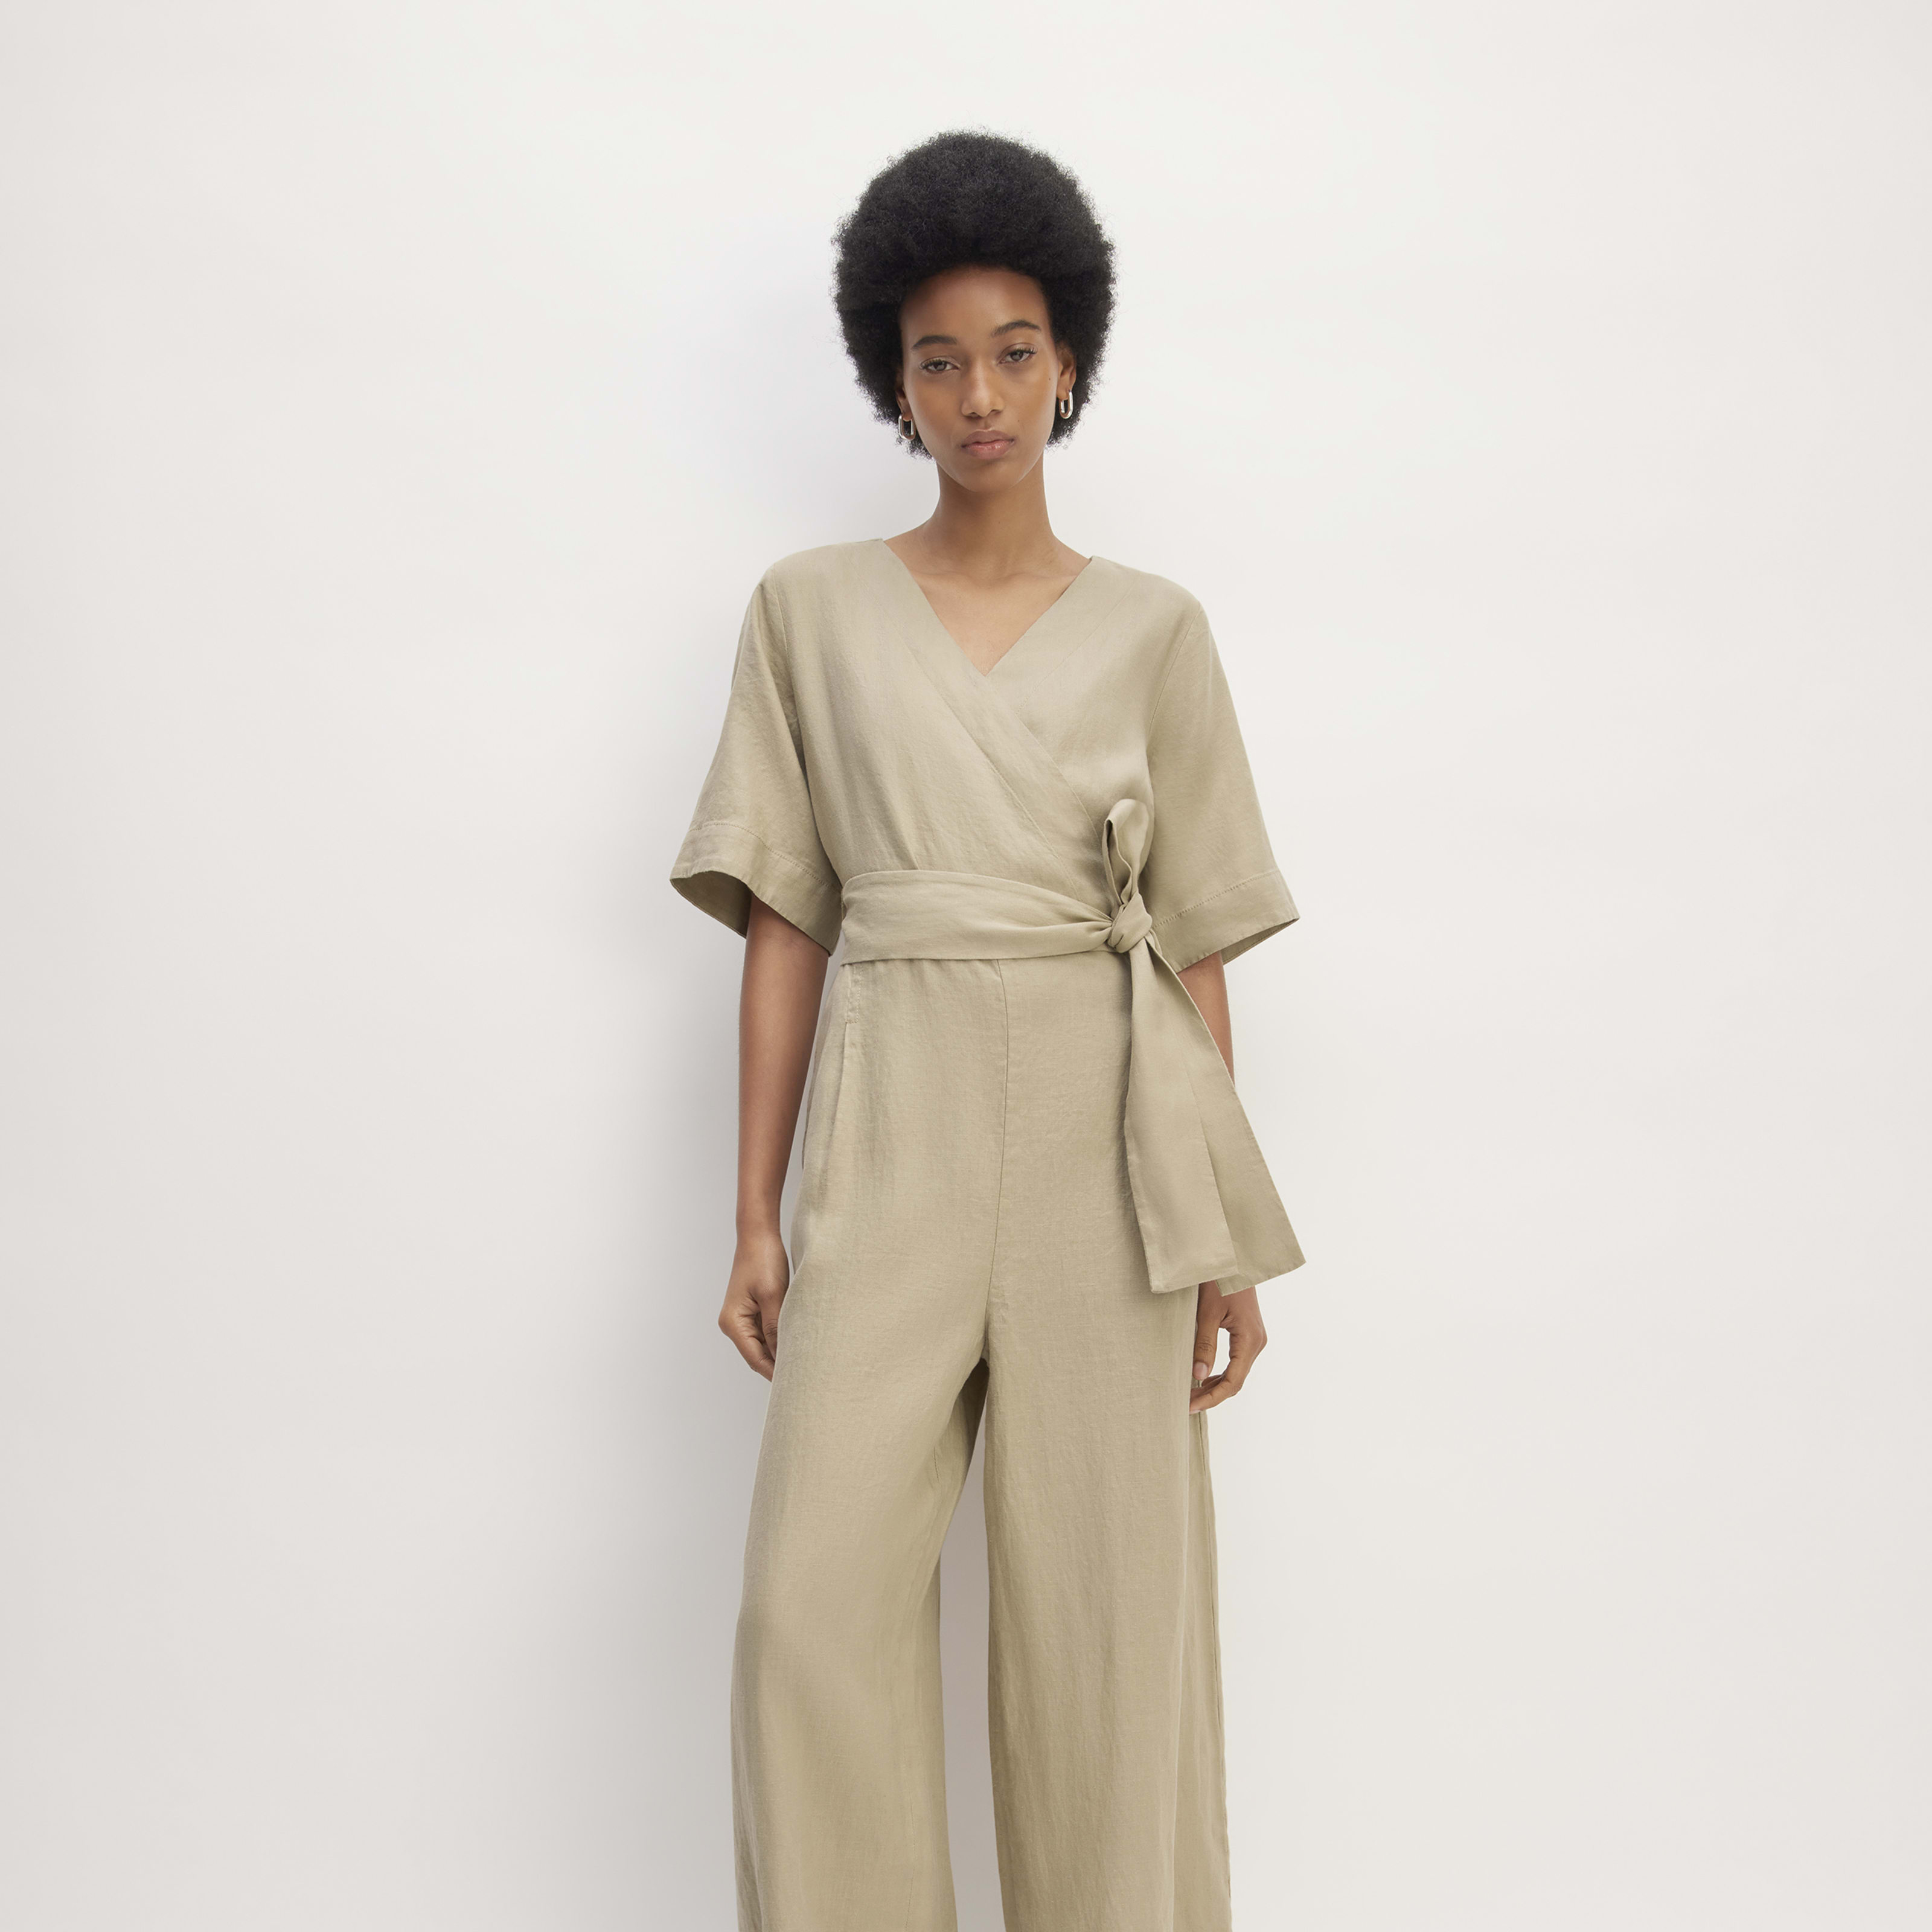 women's linen cross-front jumpsuit by everlane in khaki, size 00